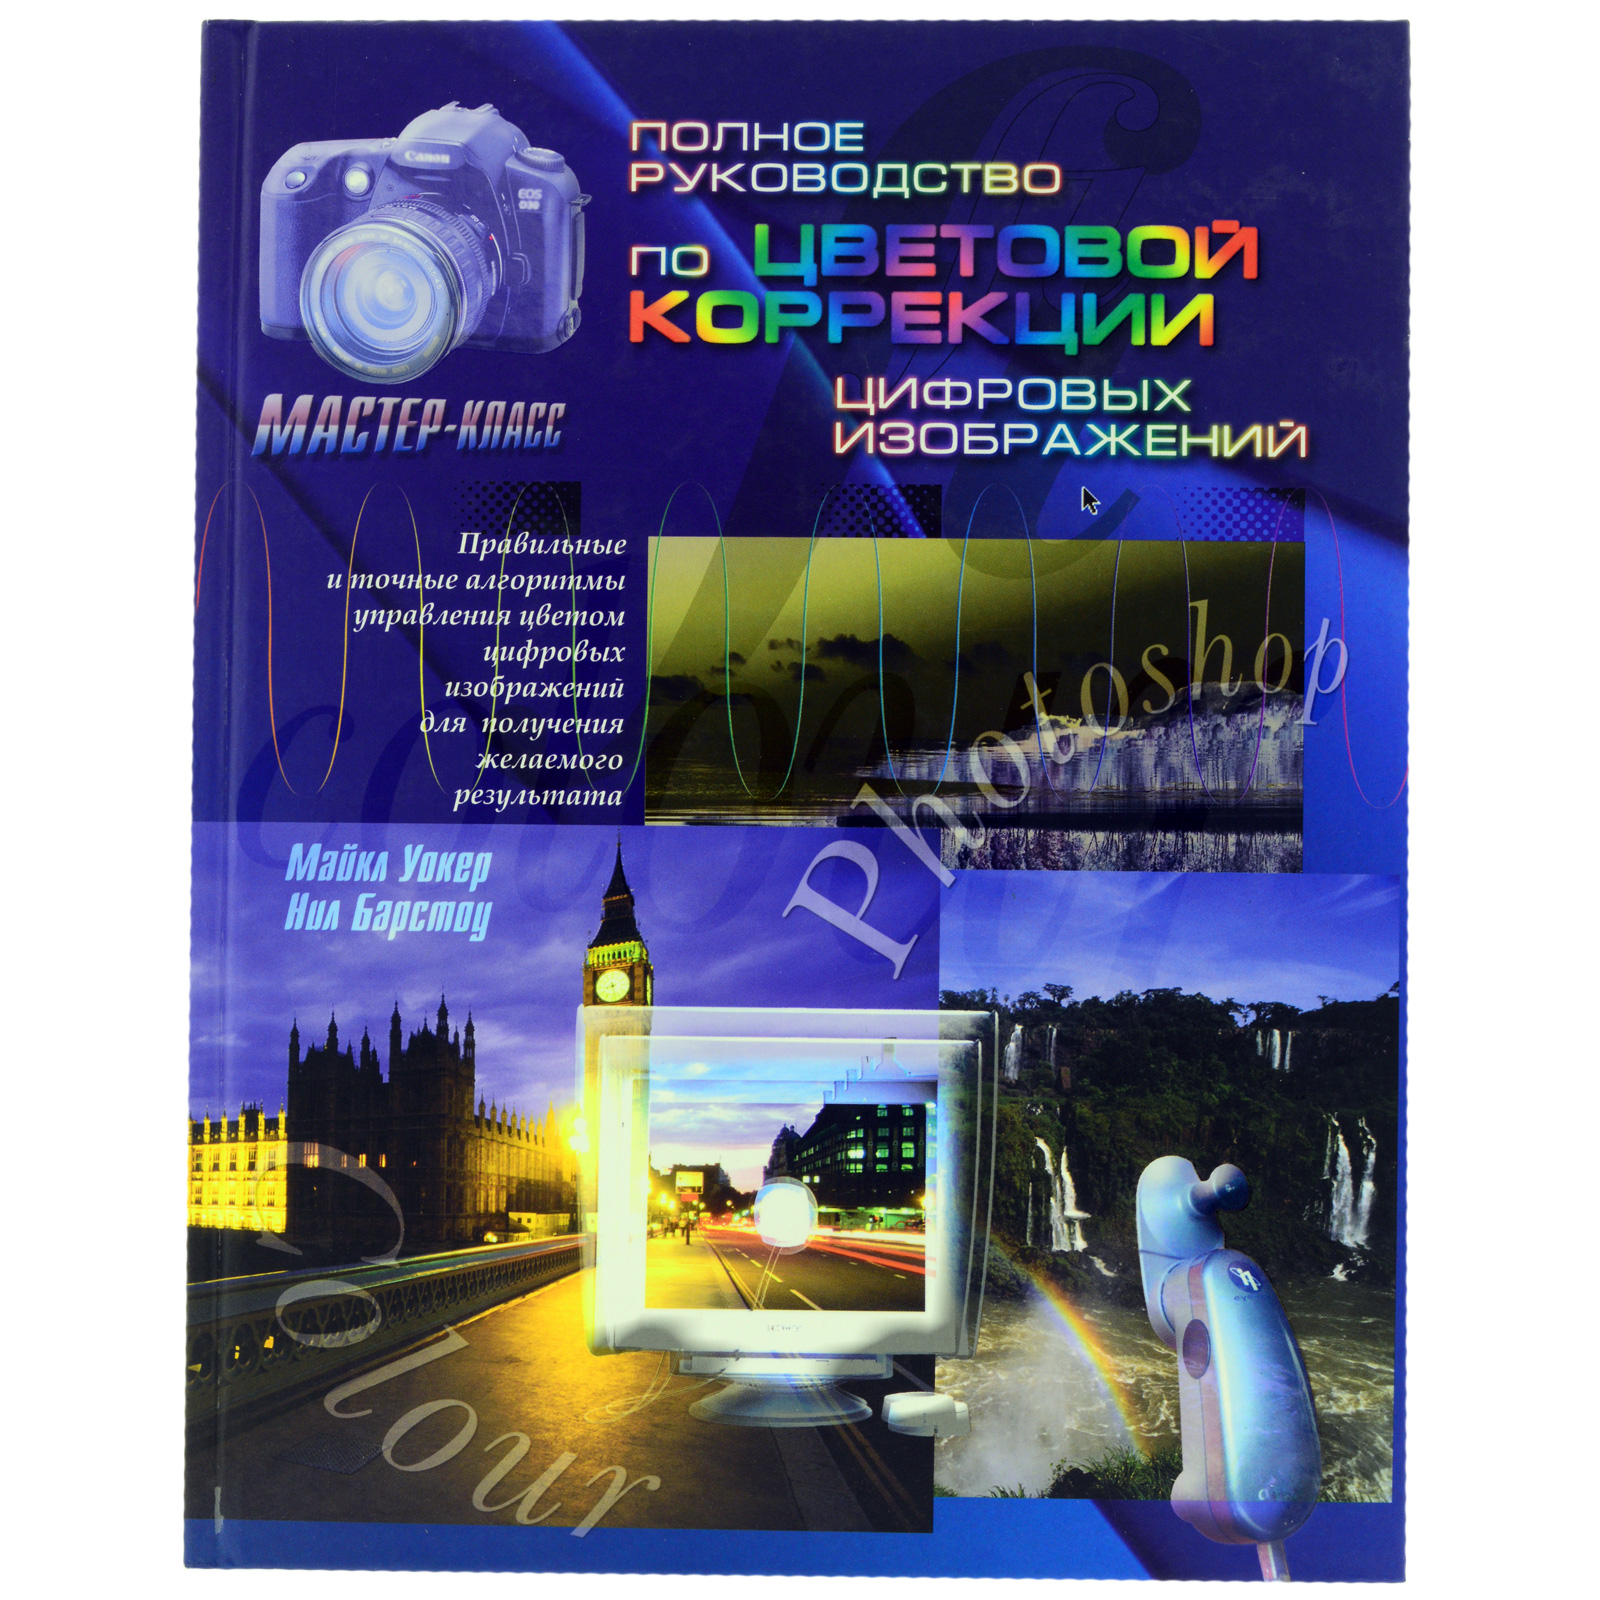 Книга "Полное руководство по цветовой коррекции цифровых изображений" Майкл Уокер и Нил Барстоу б/у